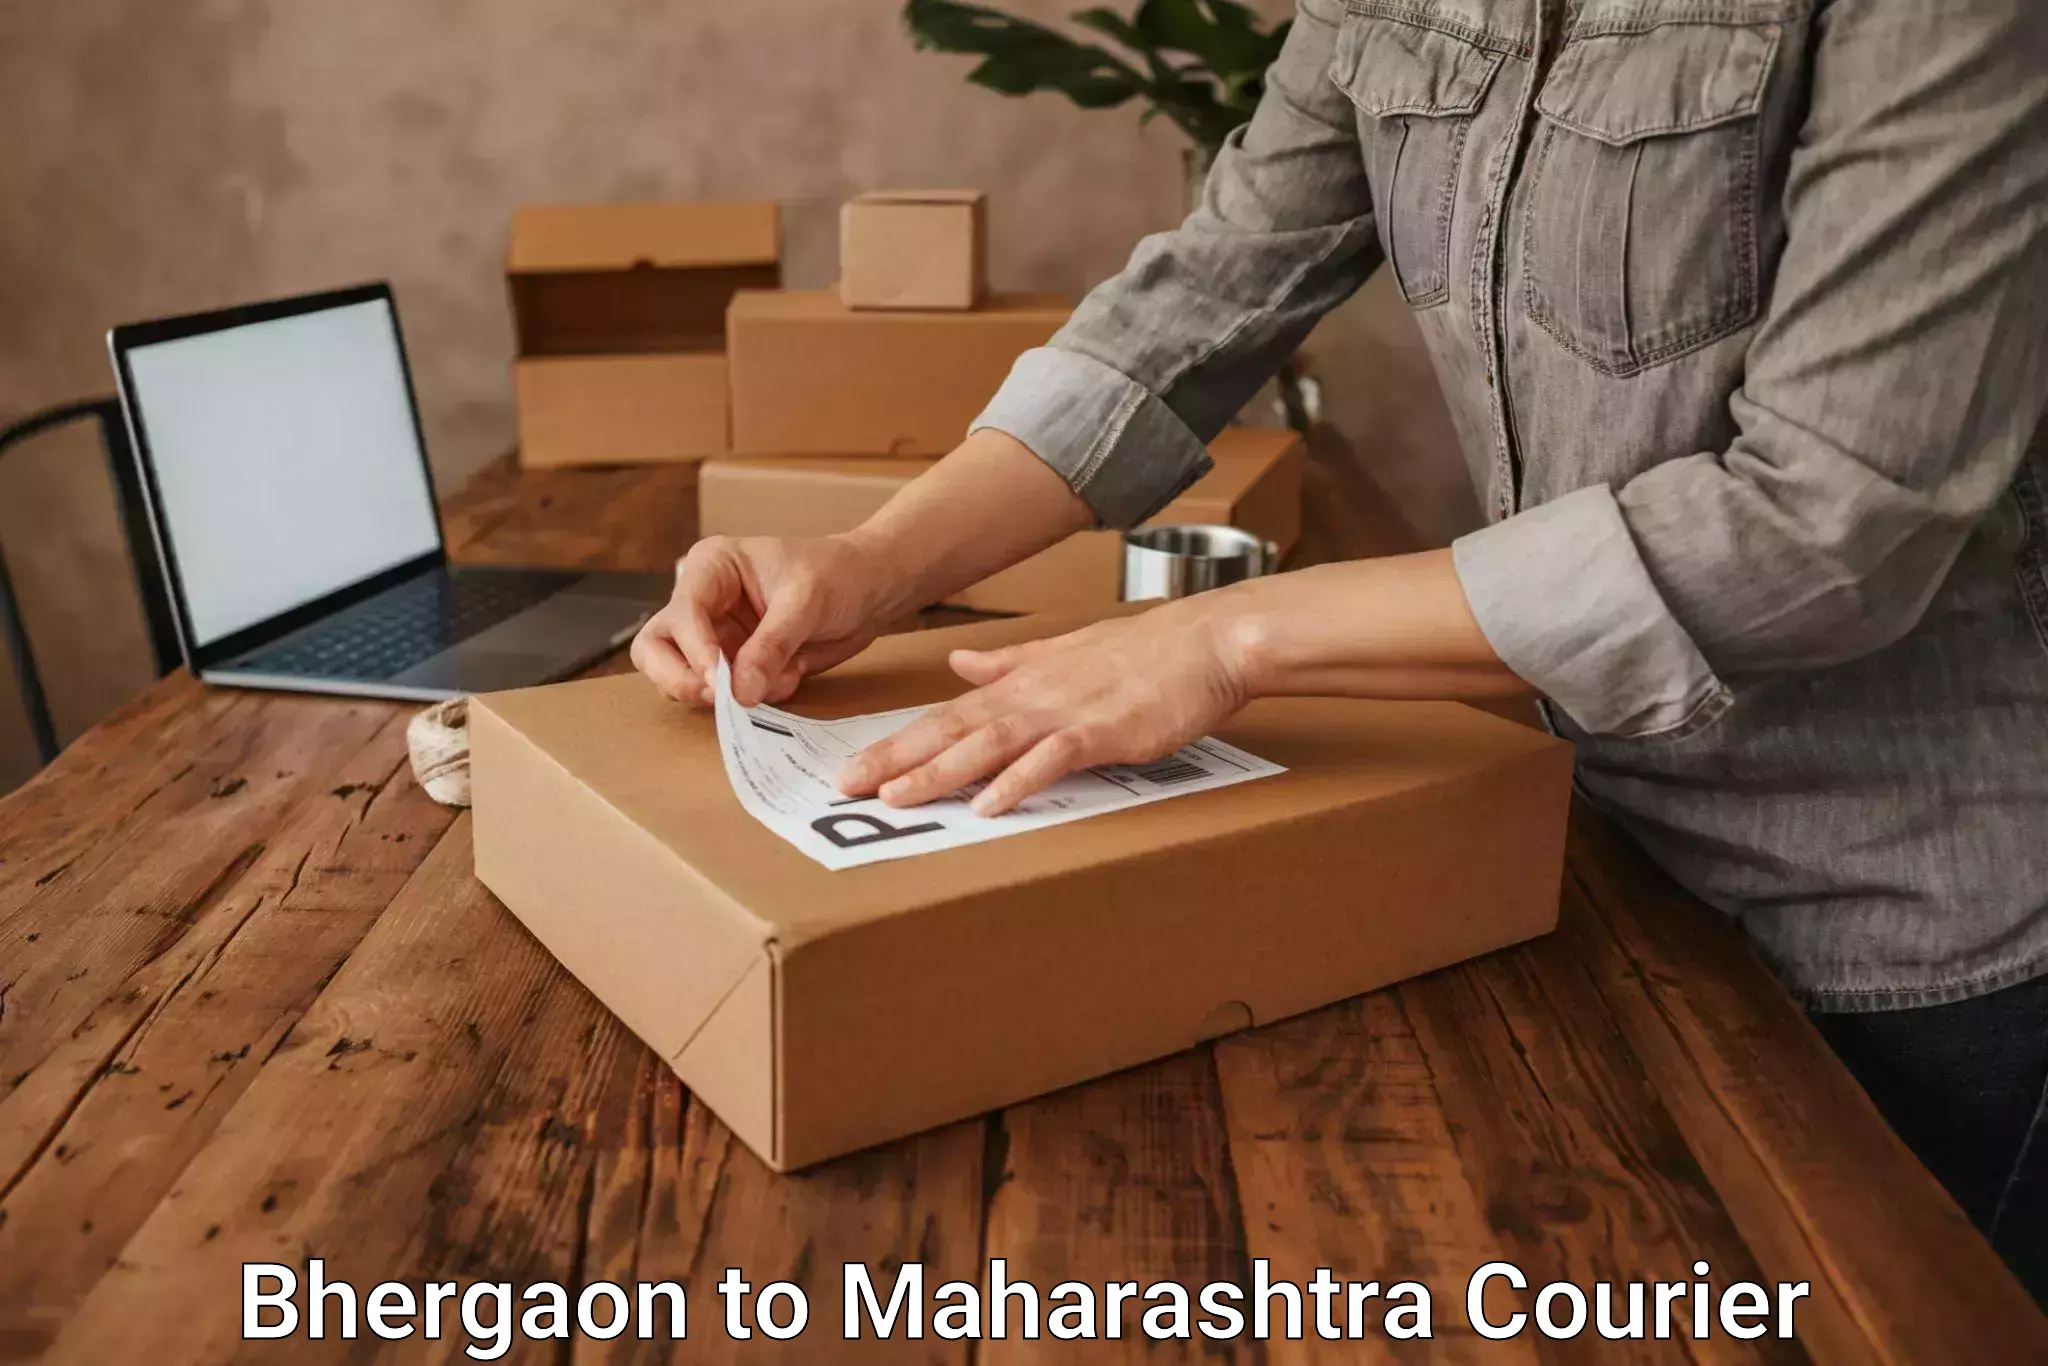 Premium courier services in Bhergaon to Shrigonda